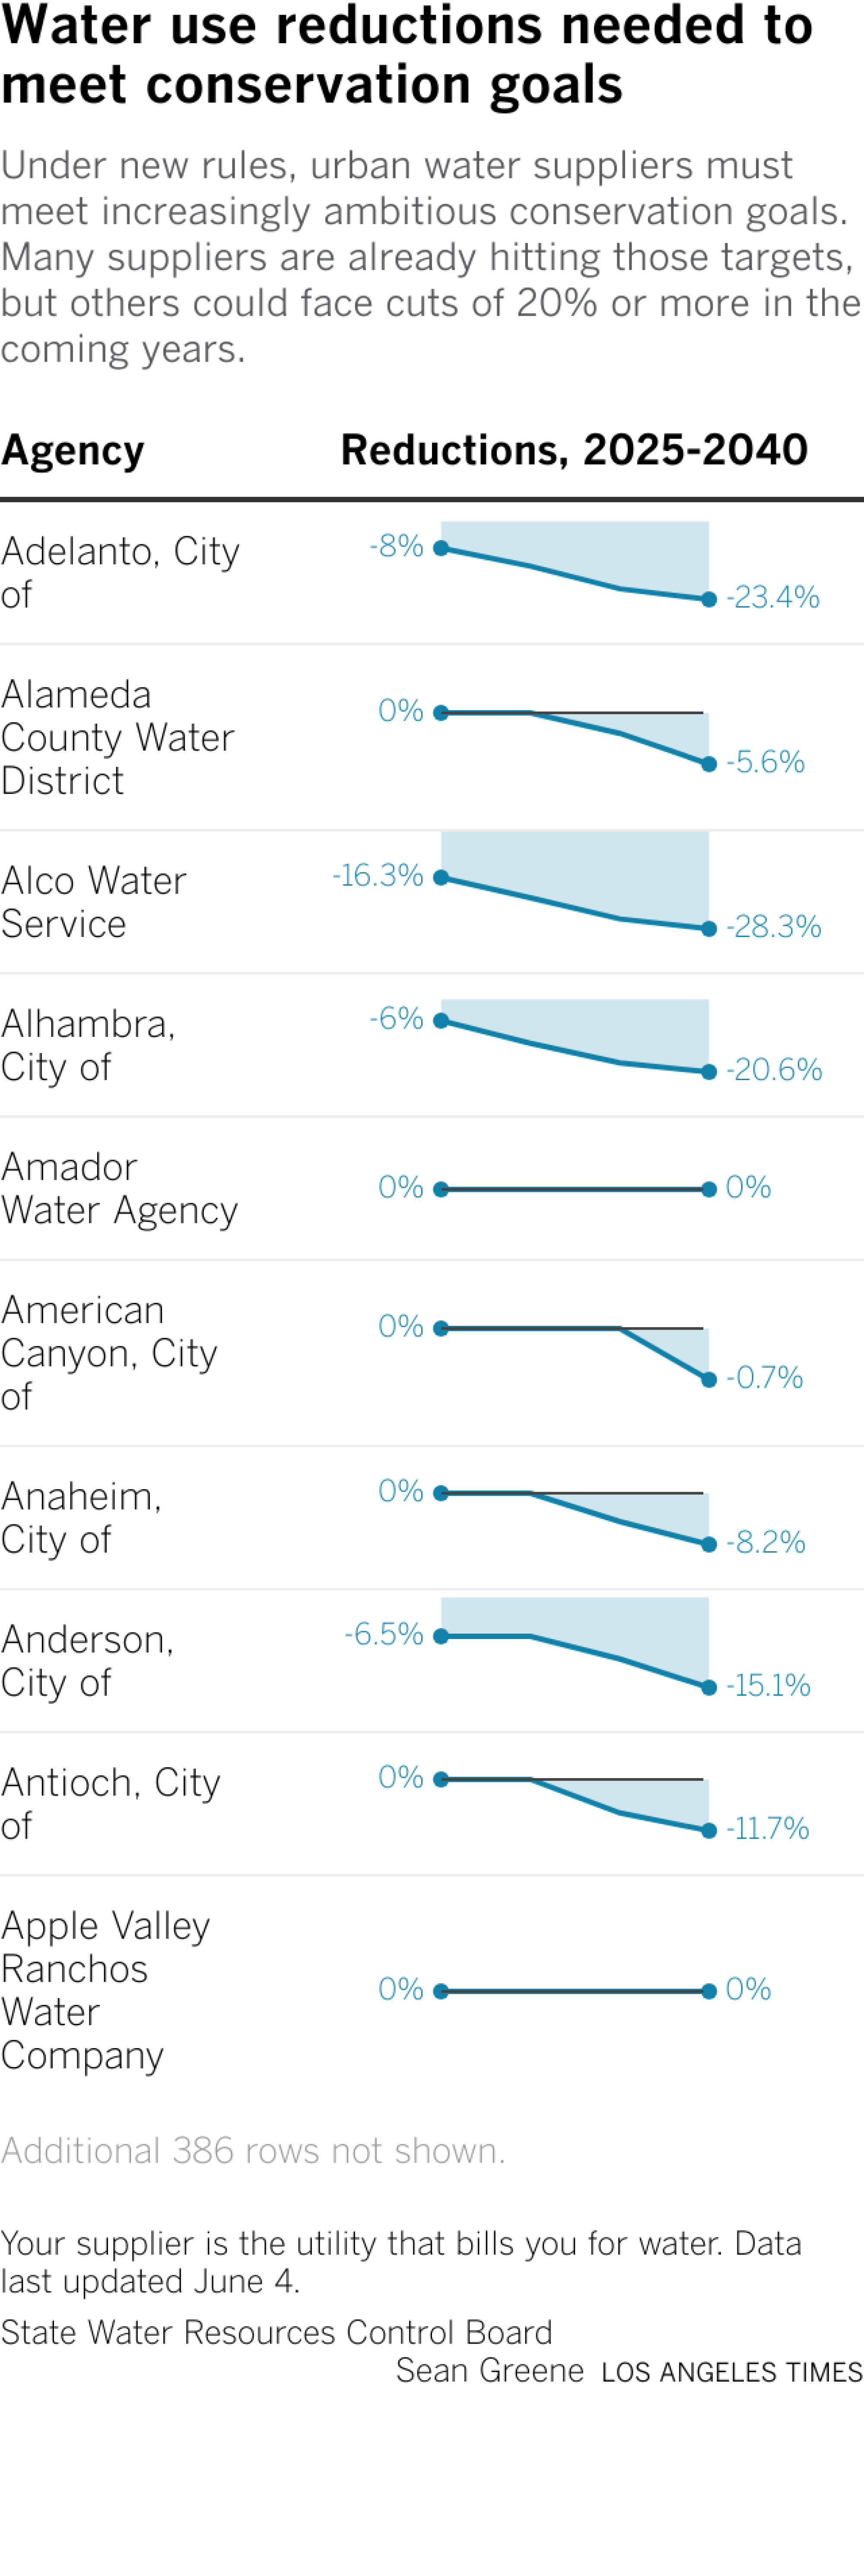 La tabla enumera alrededor de 400 proveedores urbanos de agua y sus reducciones en el uso de agua.